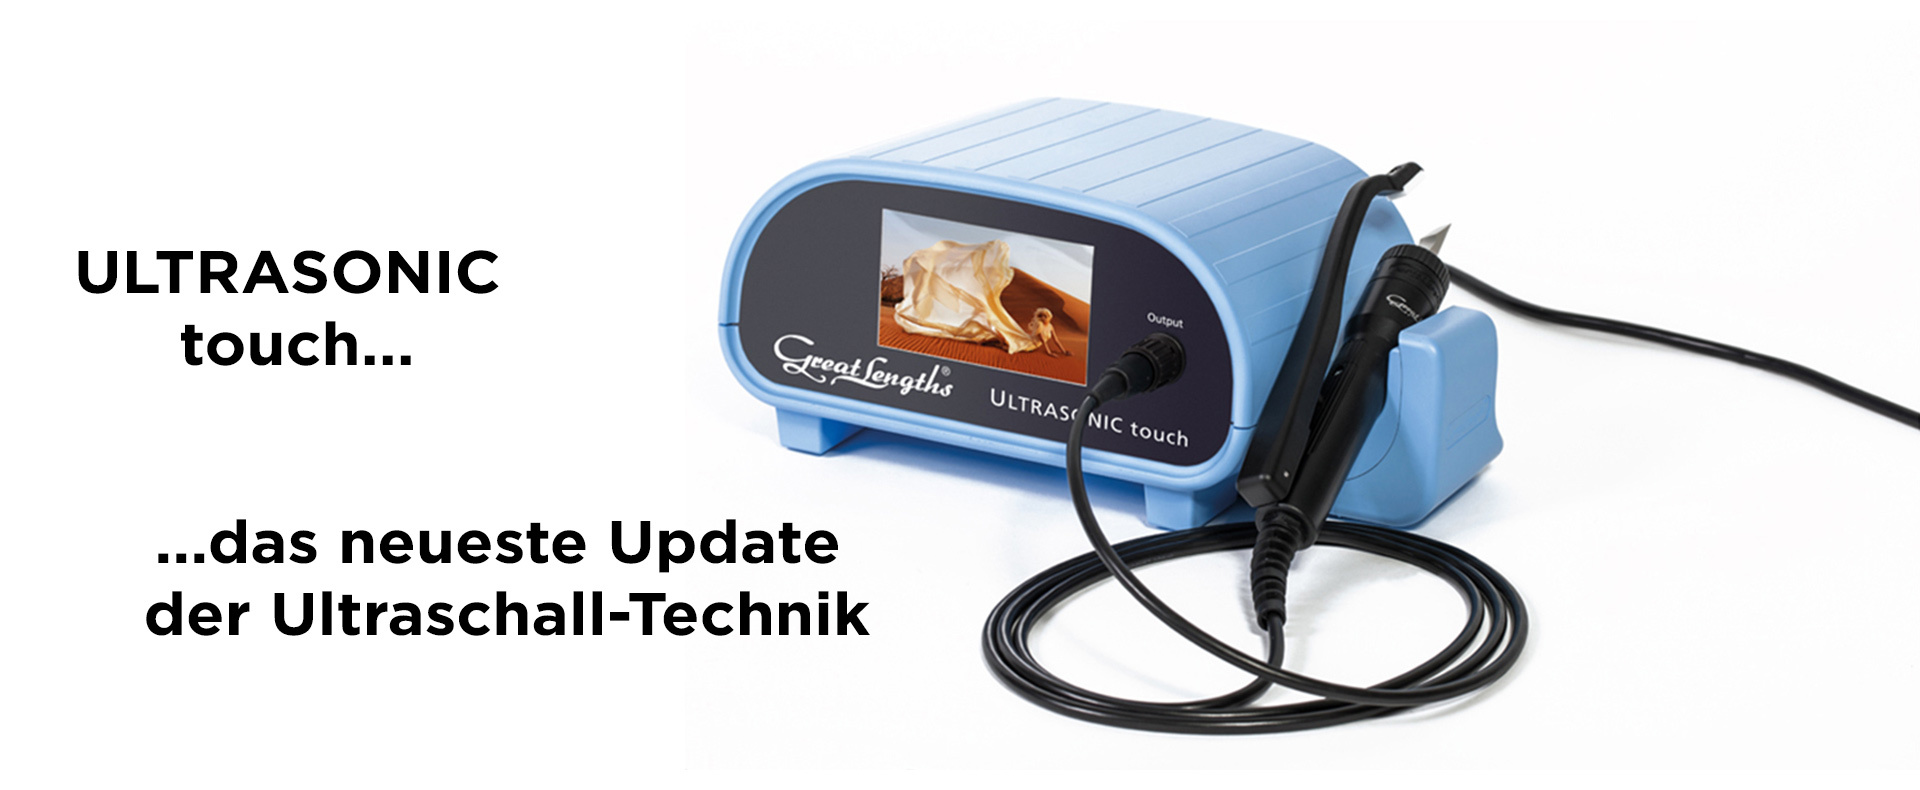 Ultraschalltechnik - ULTRASONIC touch - das Update (© Great Lengths)